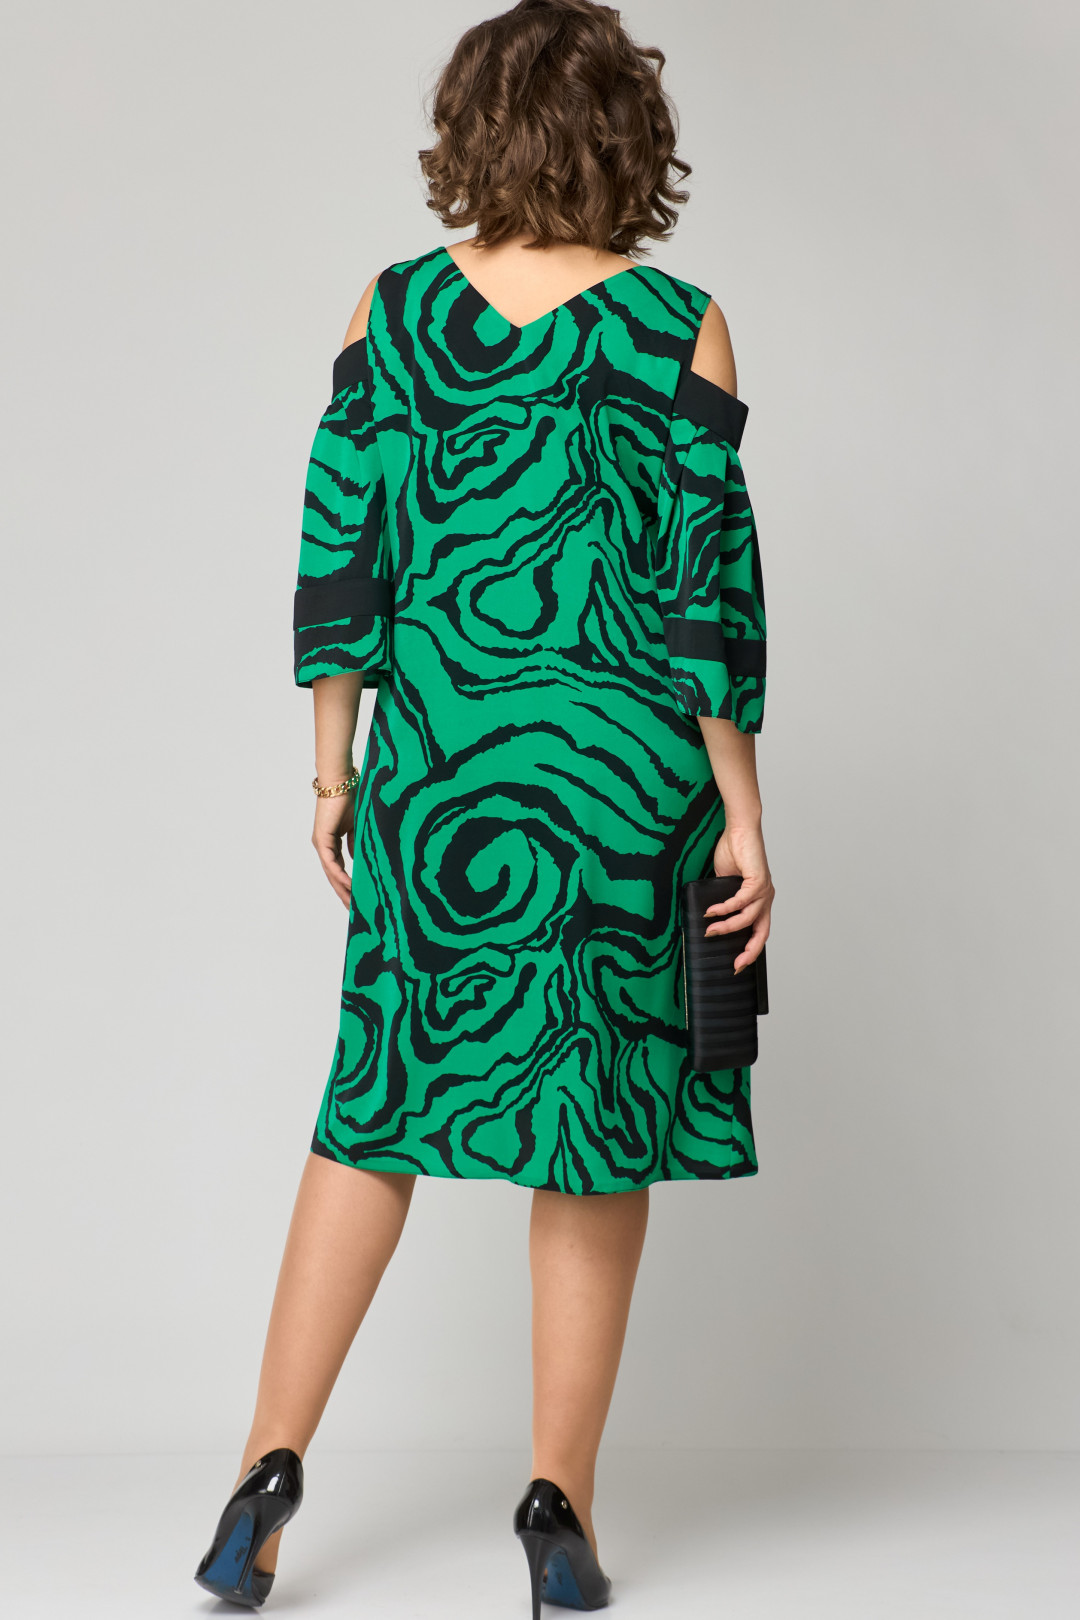 Платье EVA GRANT 7145 зеленый принт